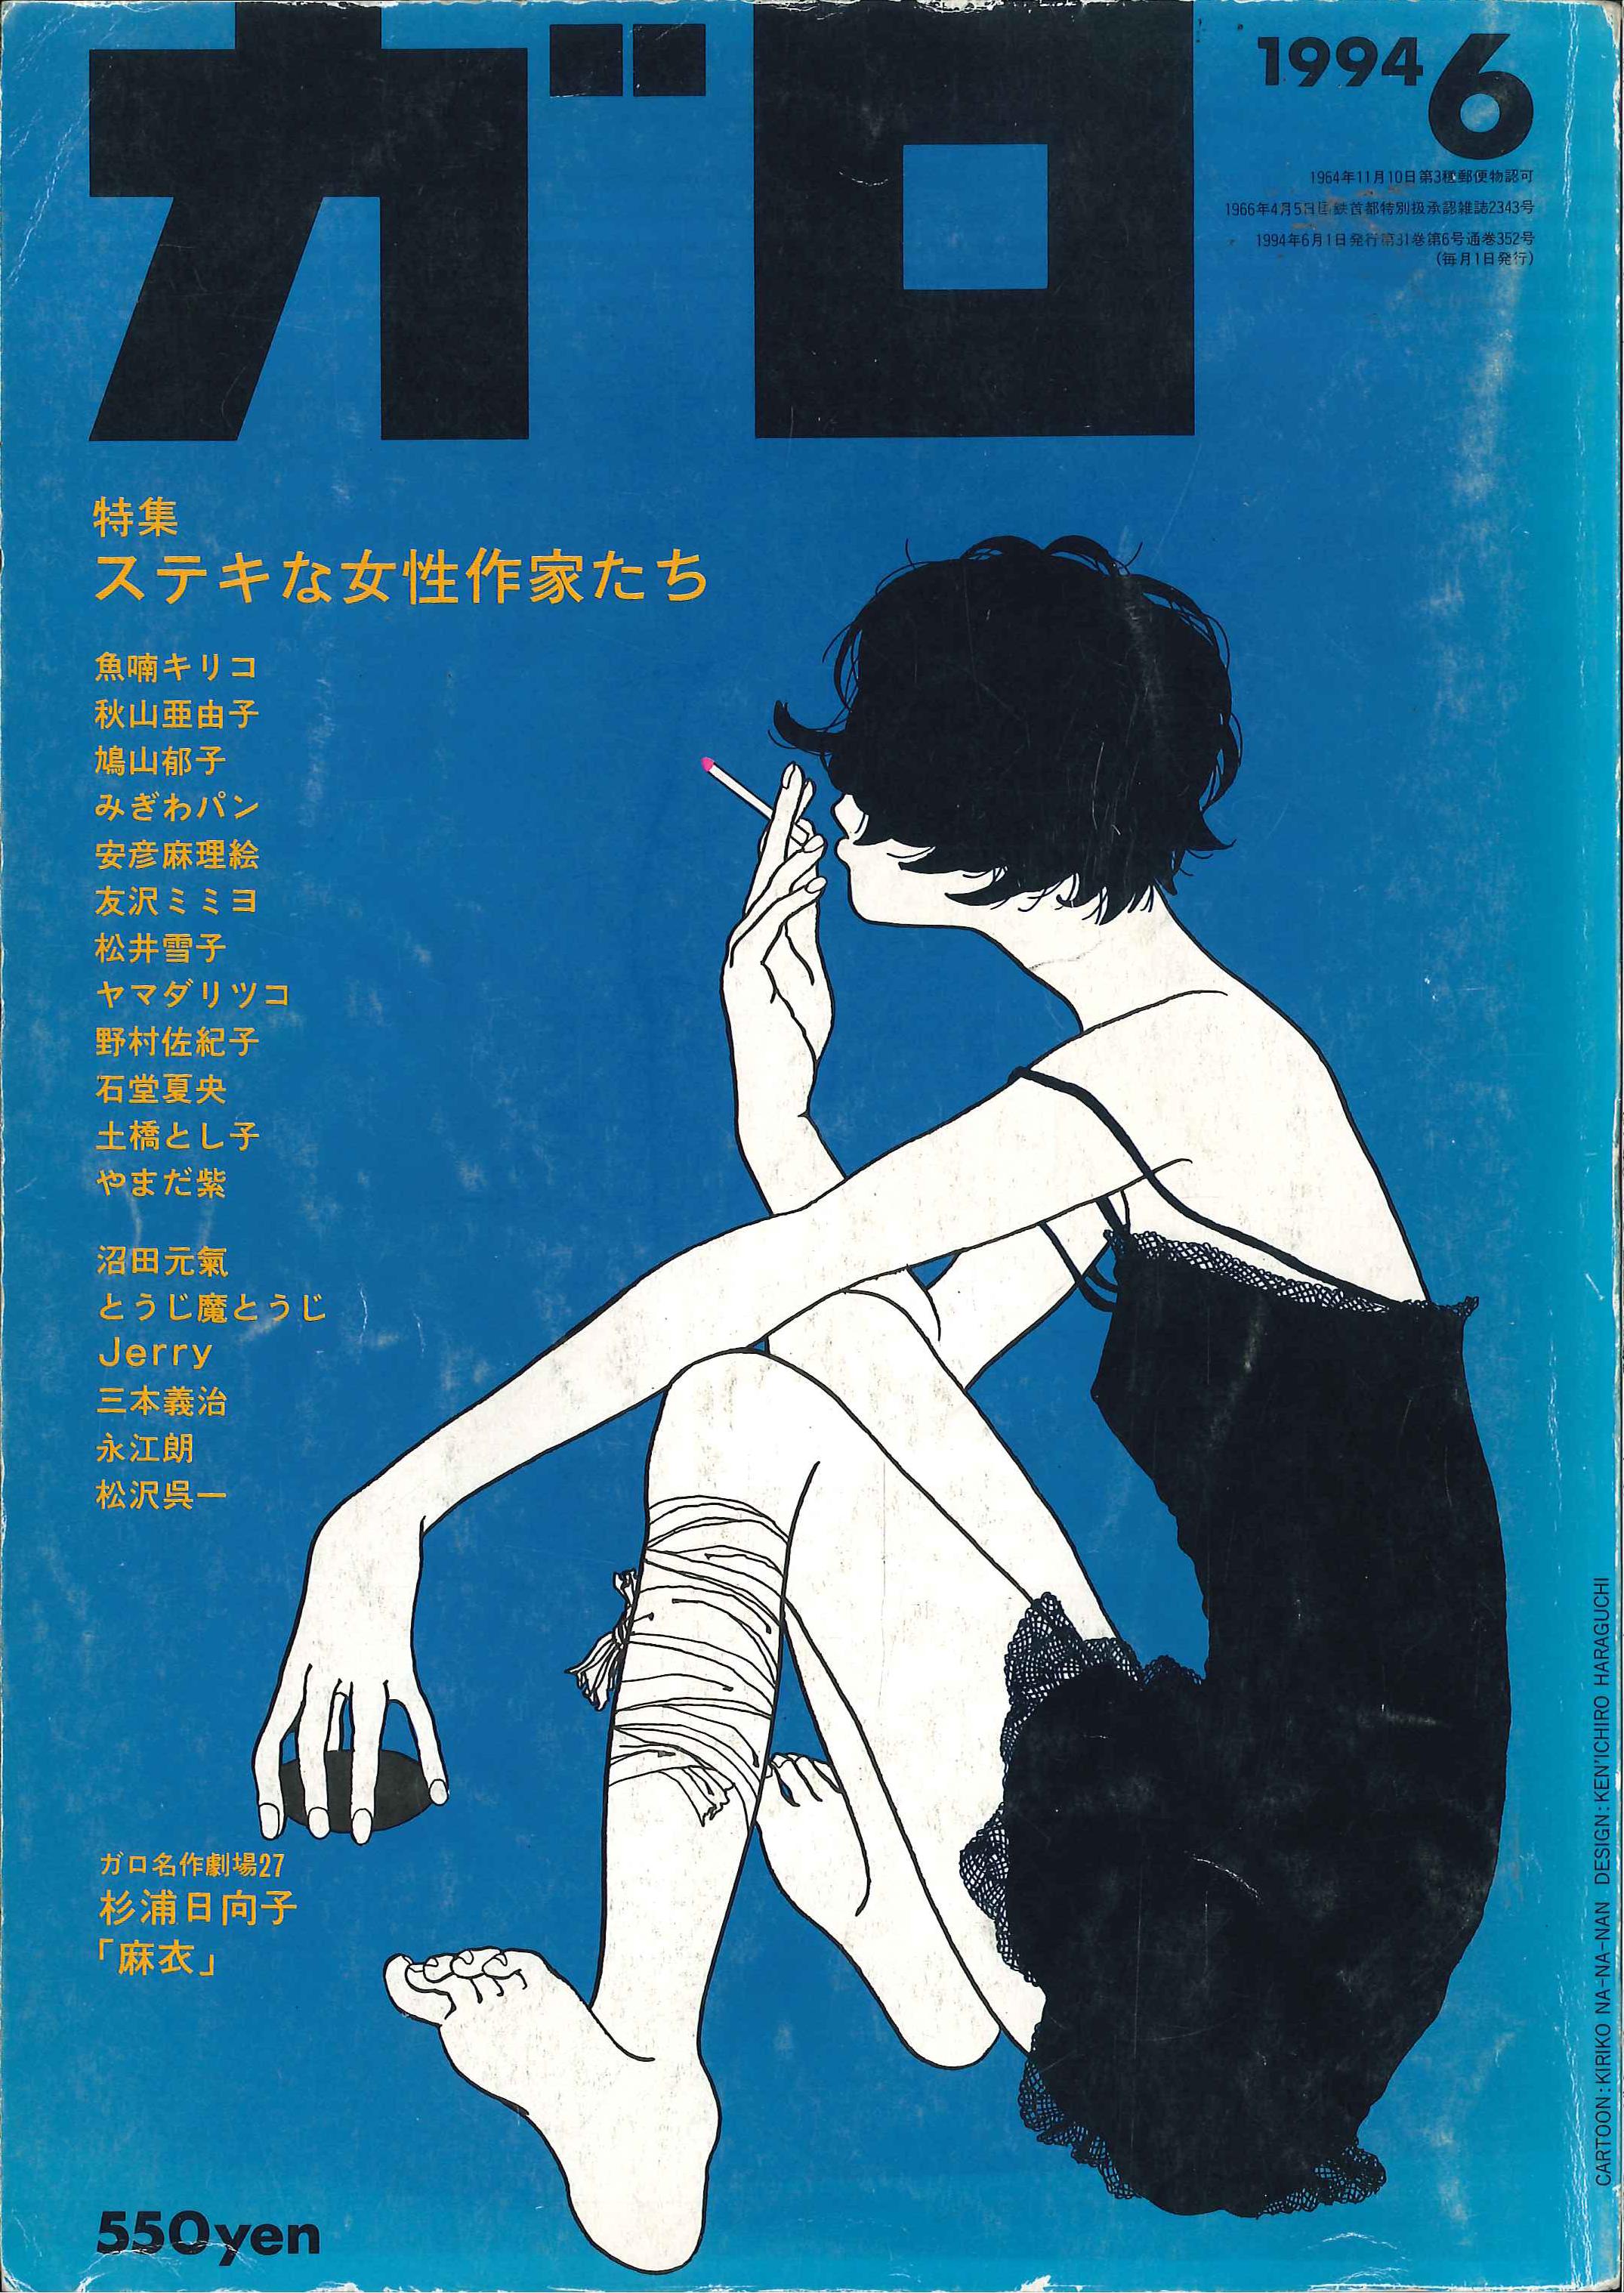 青林堂 1994年(平成6年)の漫画雑誌 『月刊ガロ1994年(平成6年)06月号 9406』 | まんだらけ Mandarake